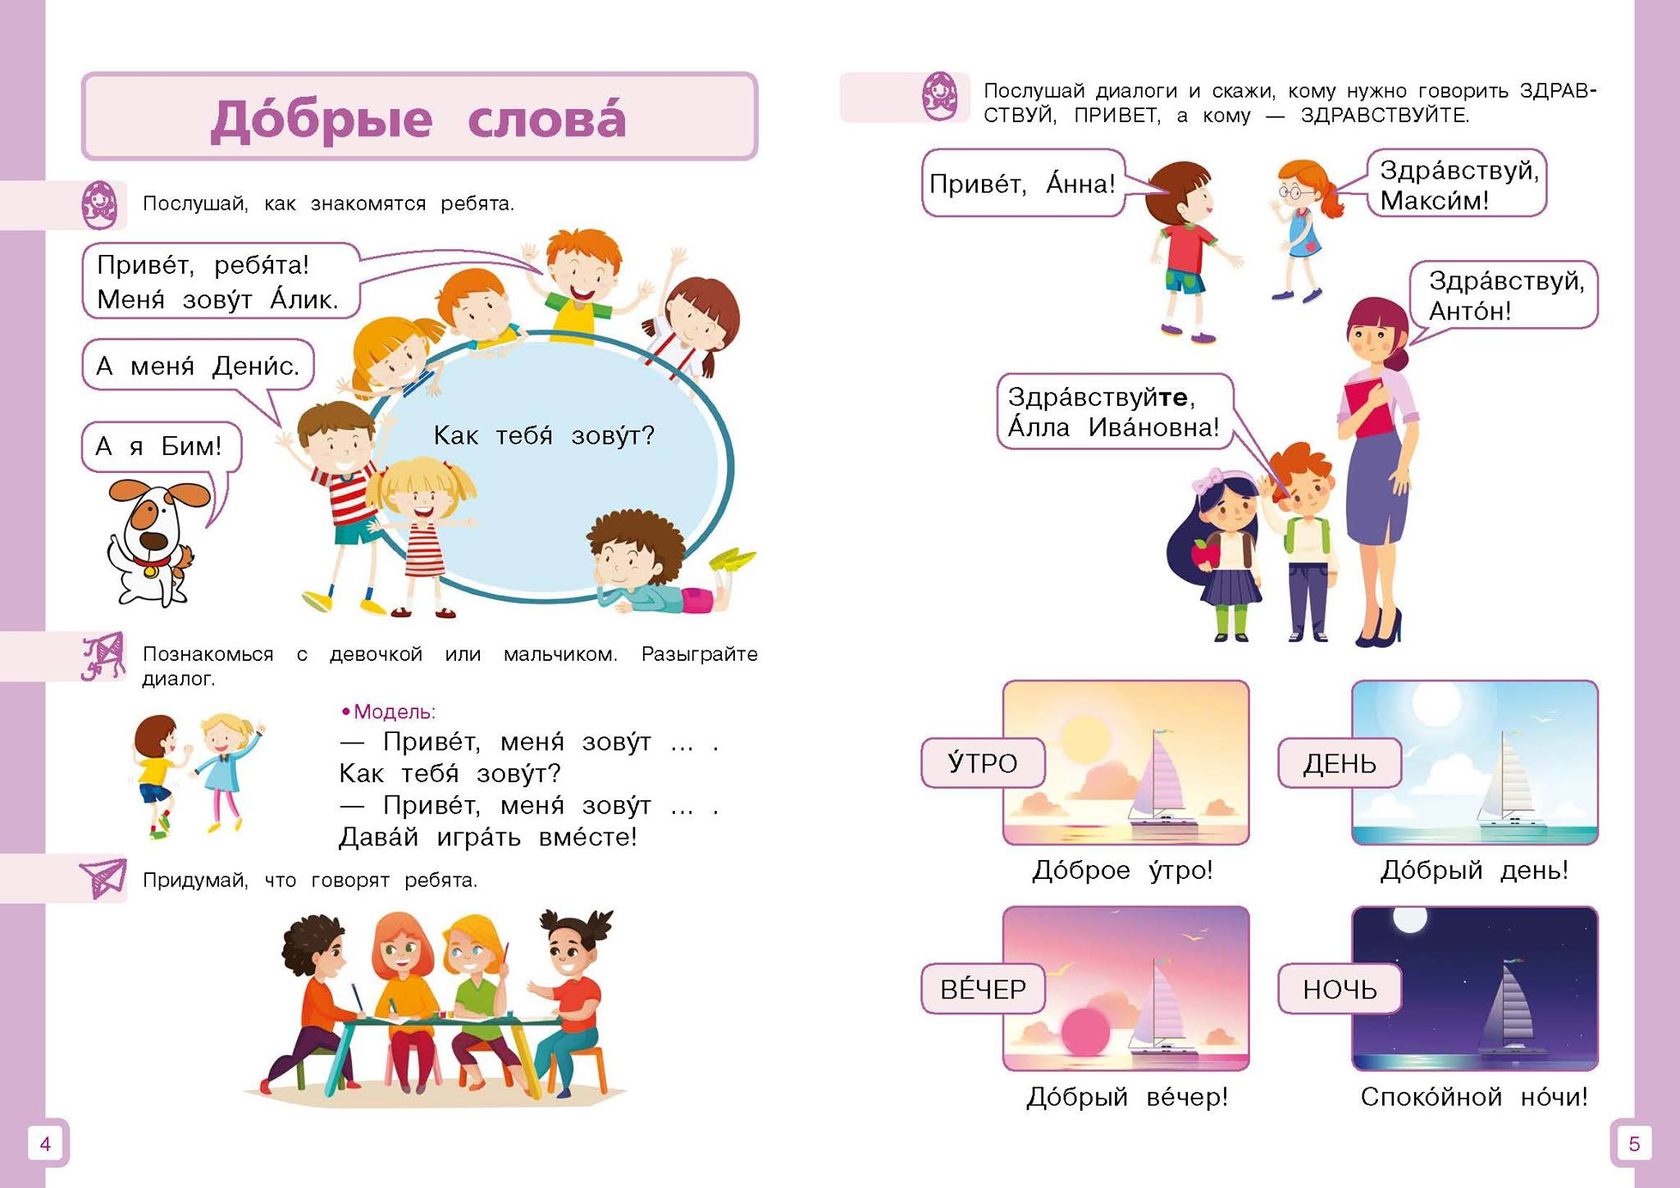 Моя семья текст на английском. Задания для детей билингвов. Задания для детей билингвов по русскому языку. РКИ для детей билингвов. Русский язык для детей.